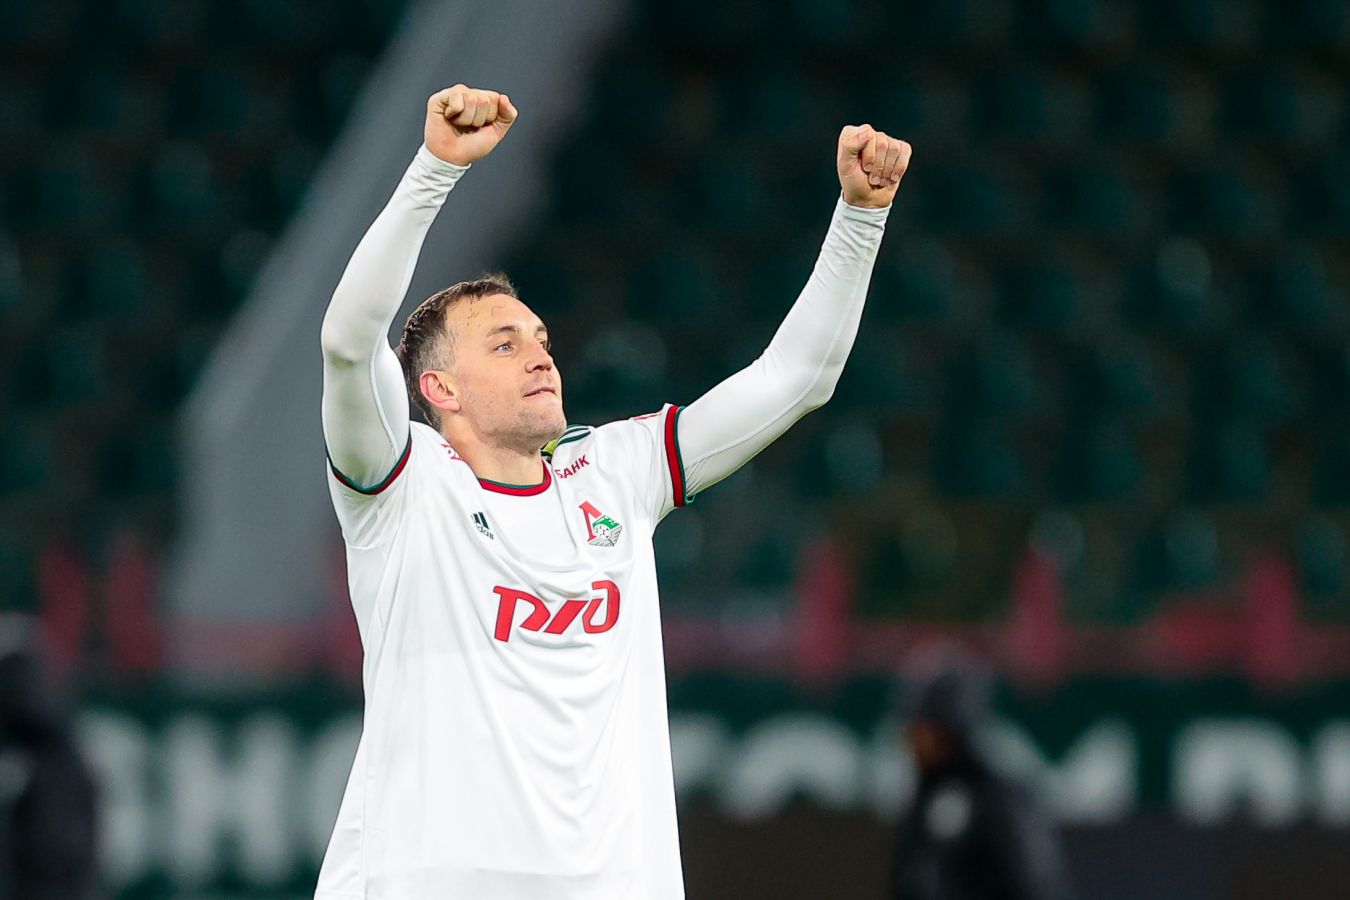 Динияр Билялетдинов ответил на вопрос, до какого возраста Дзюба сможет играть в РПЛ